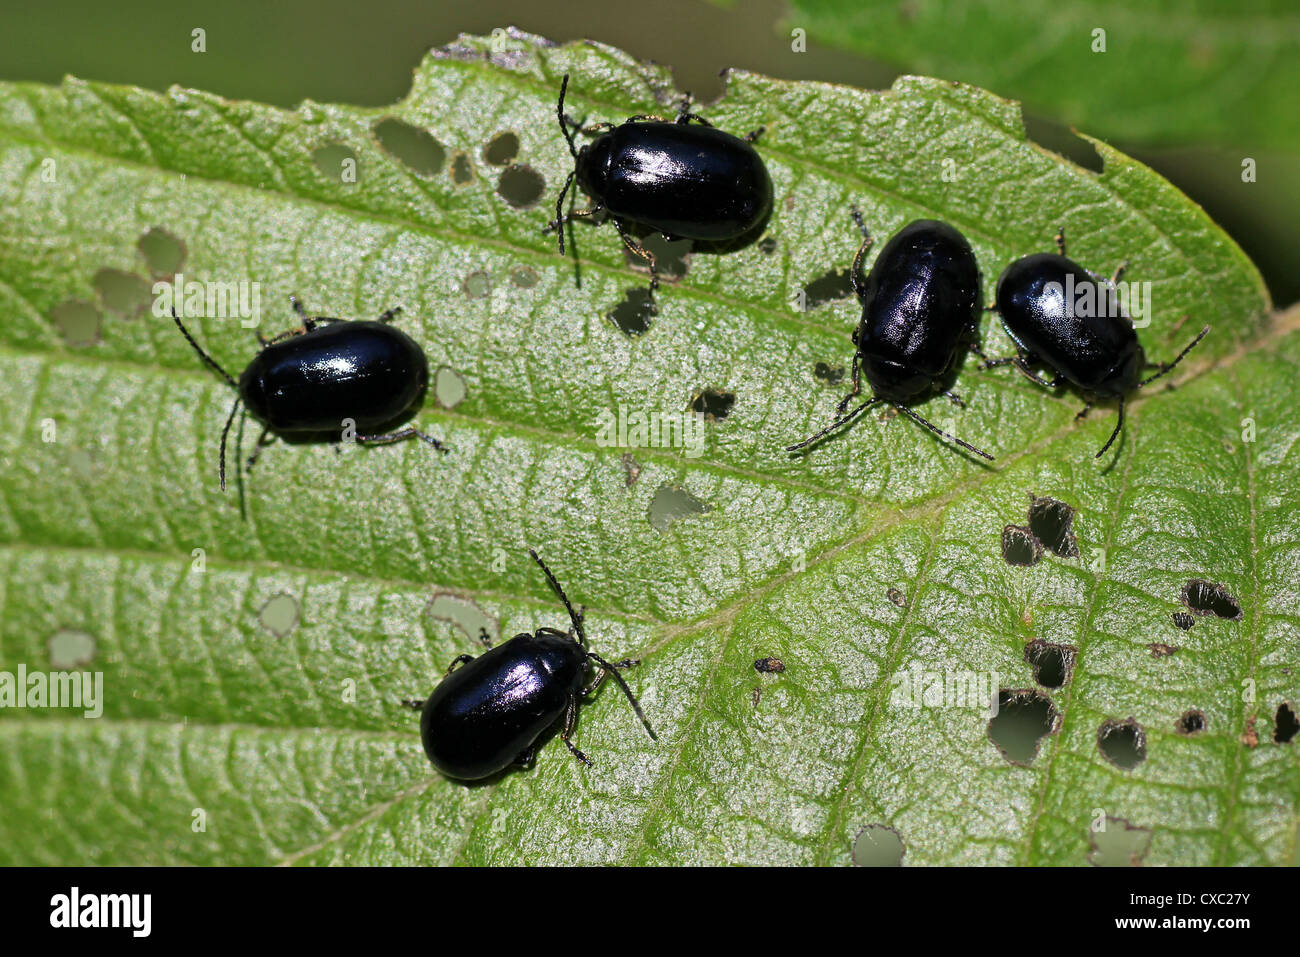 Los escarabajos de hojas de aliso Agelastica alni Foto de stock